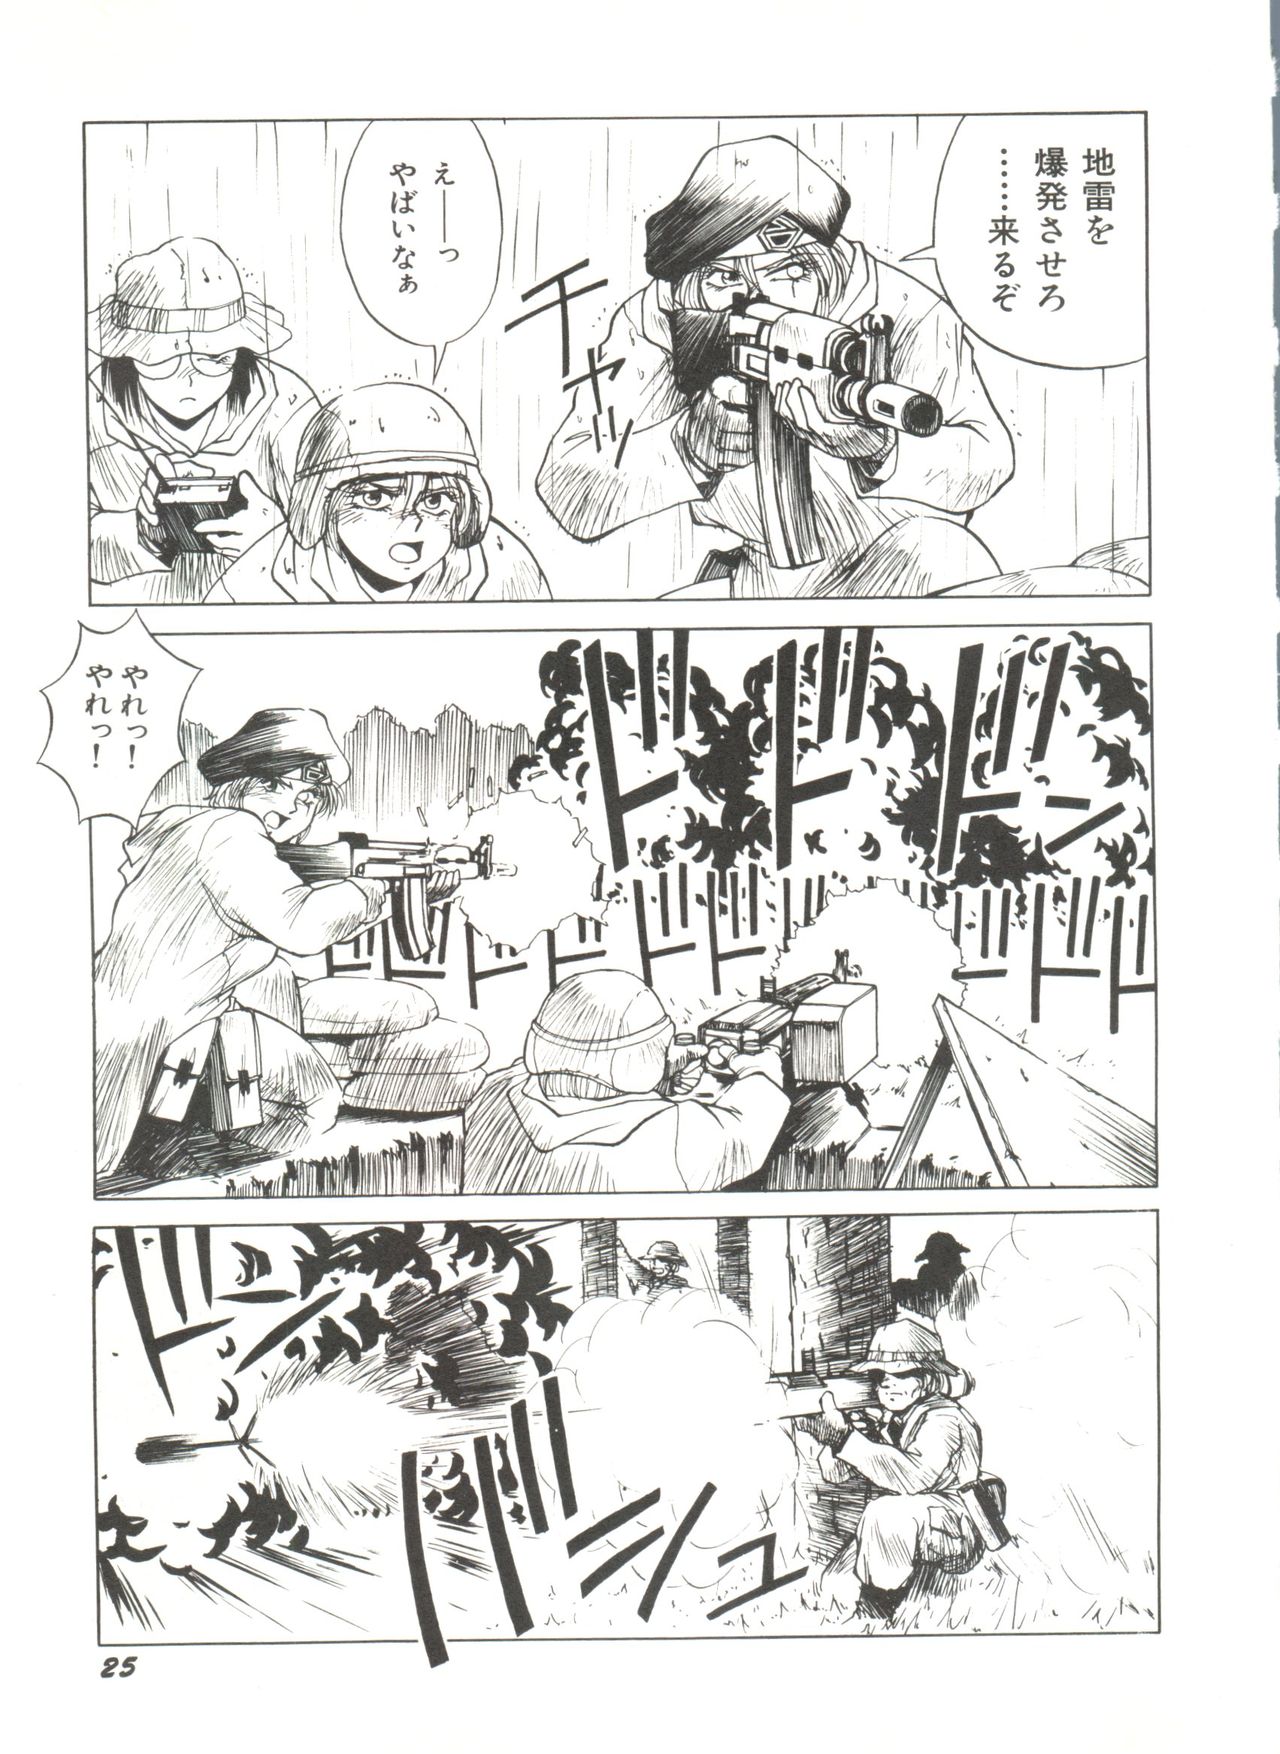 [Anthology] Bishoujo Doujinshi Anthology 4 (Various) page 29 full